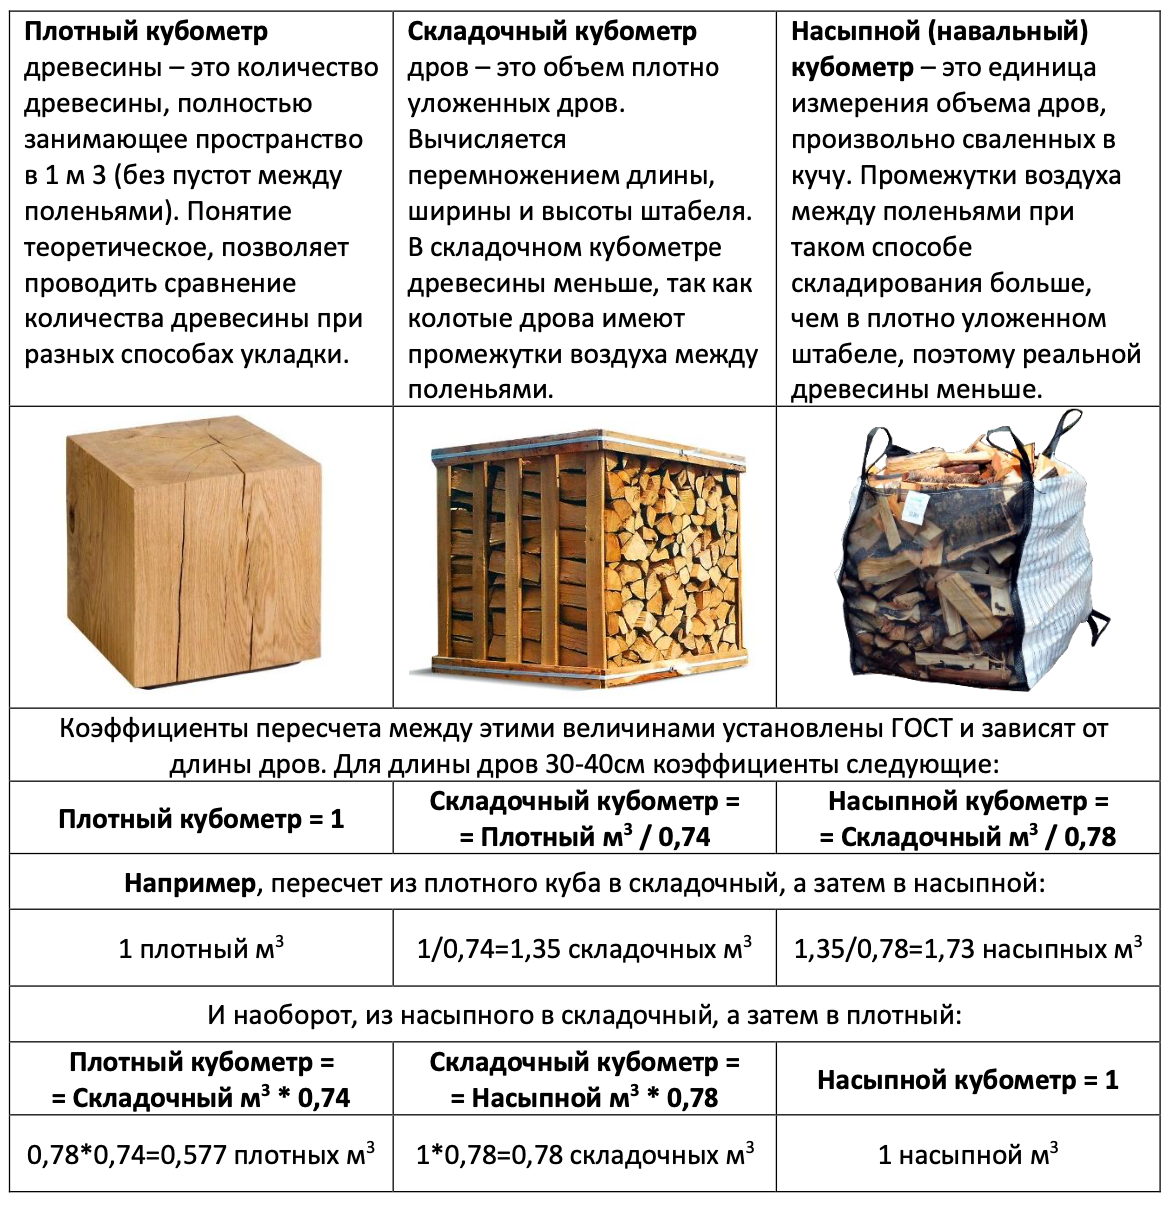 Куб дров сколько кг. Фишка дров это сколько. ГАЗ 66 объем дров. Складометр дров это сколько. Навальный куб дров сколько.